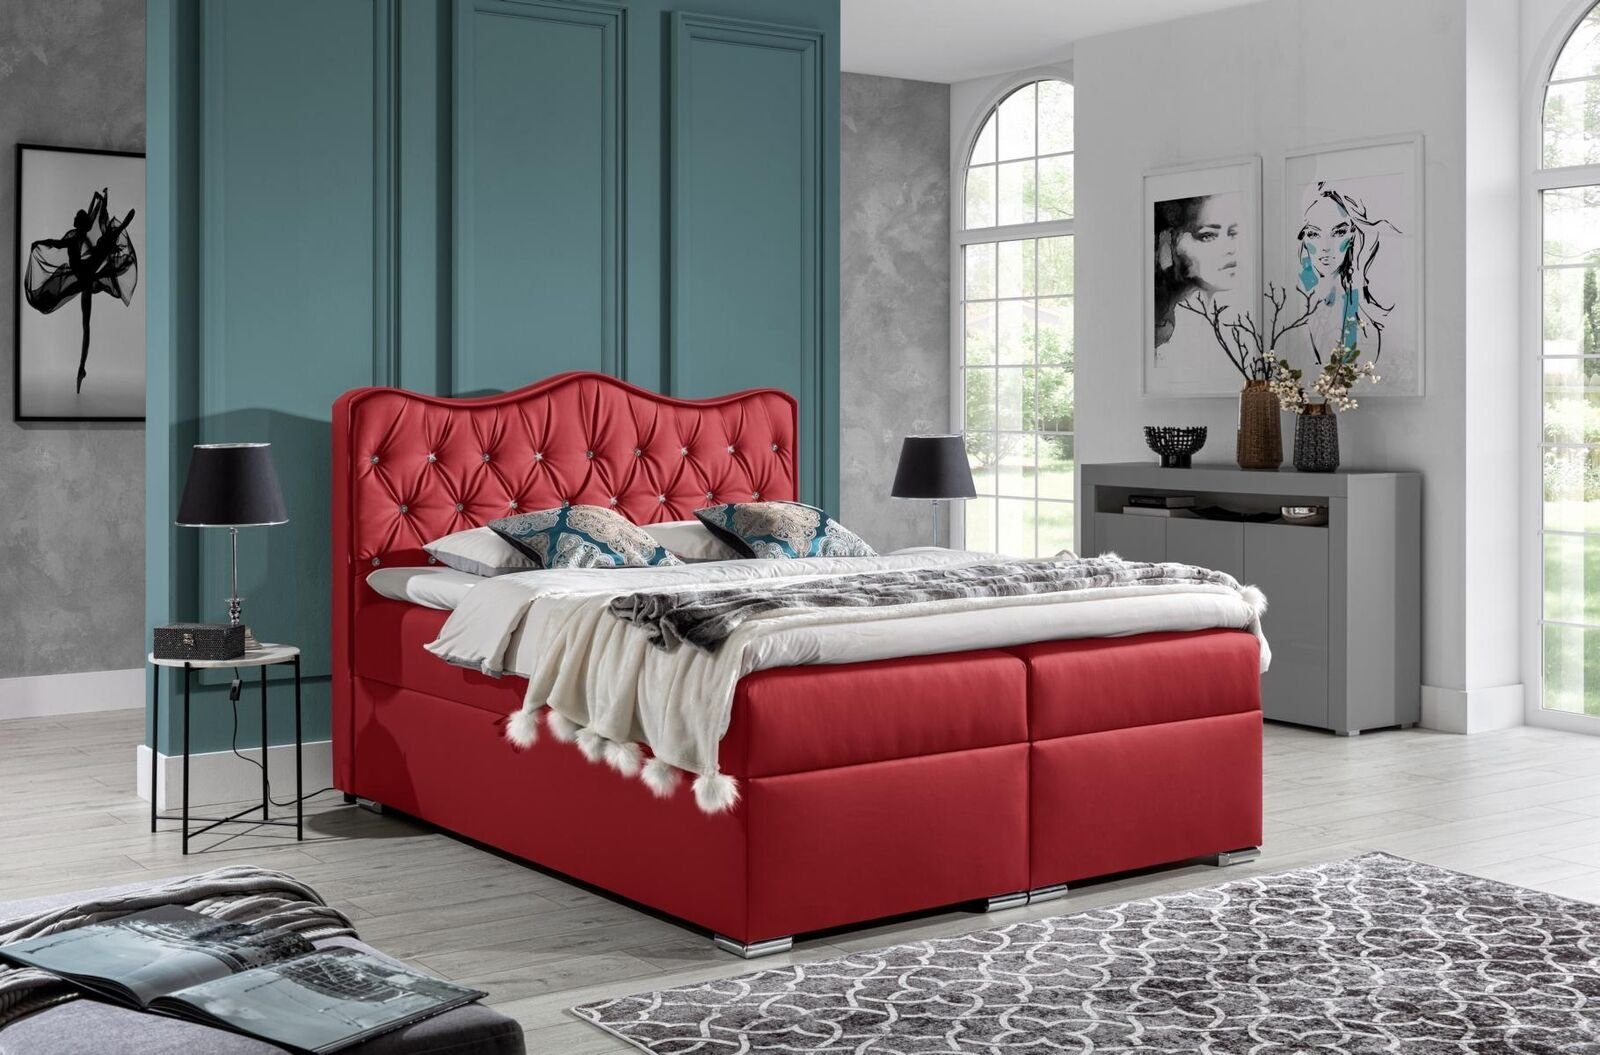 JVmoebel Bett, Doppelbett Bett Boxspringbett mit Bettkasten Ehebett Betten Rot